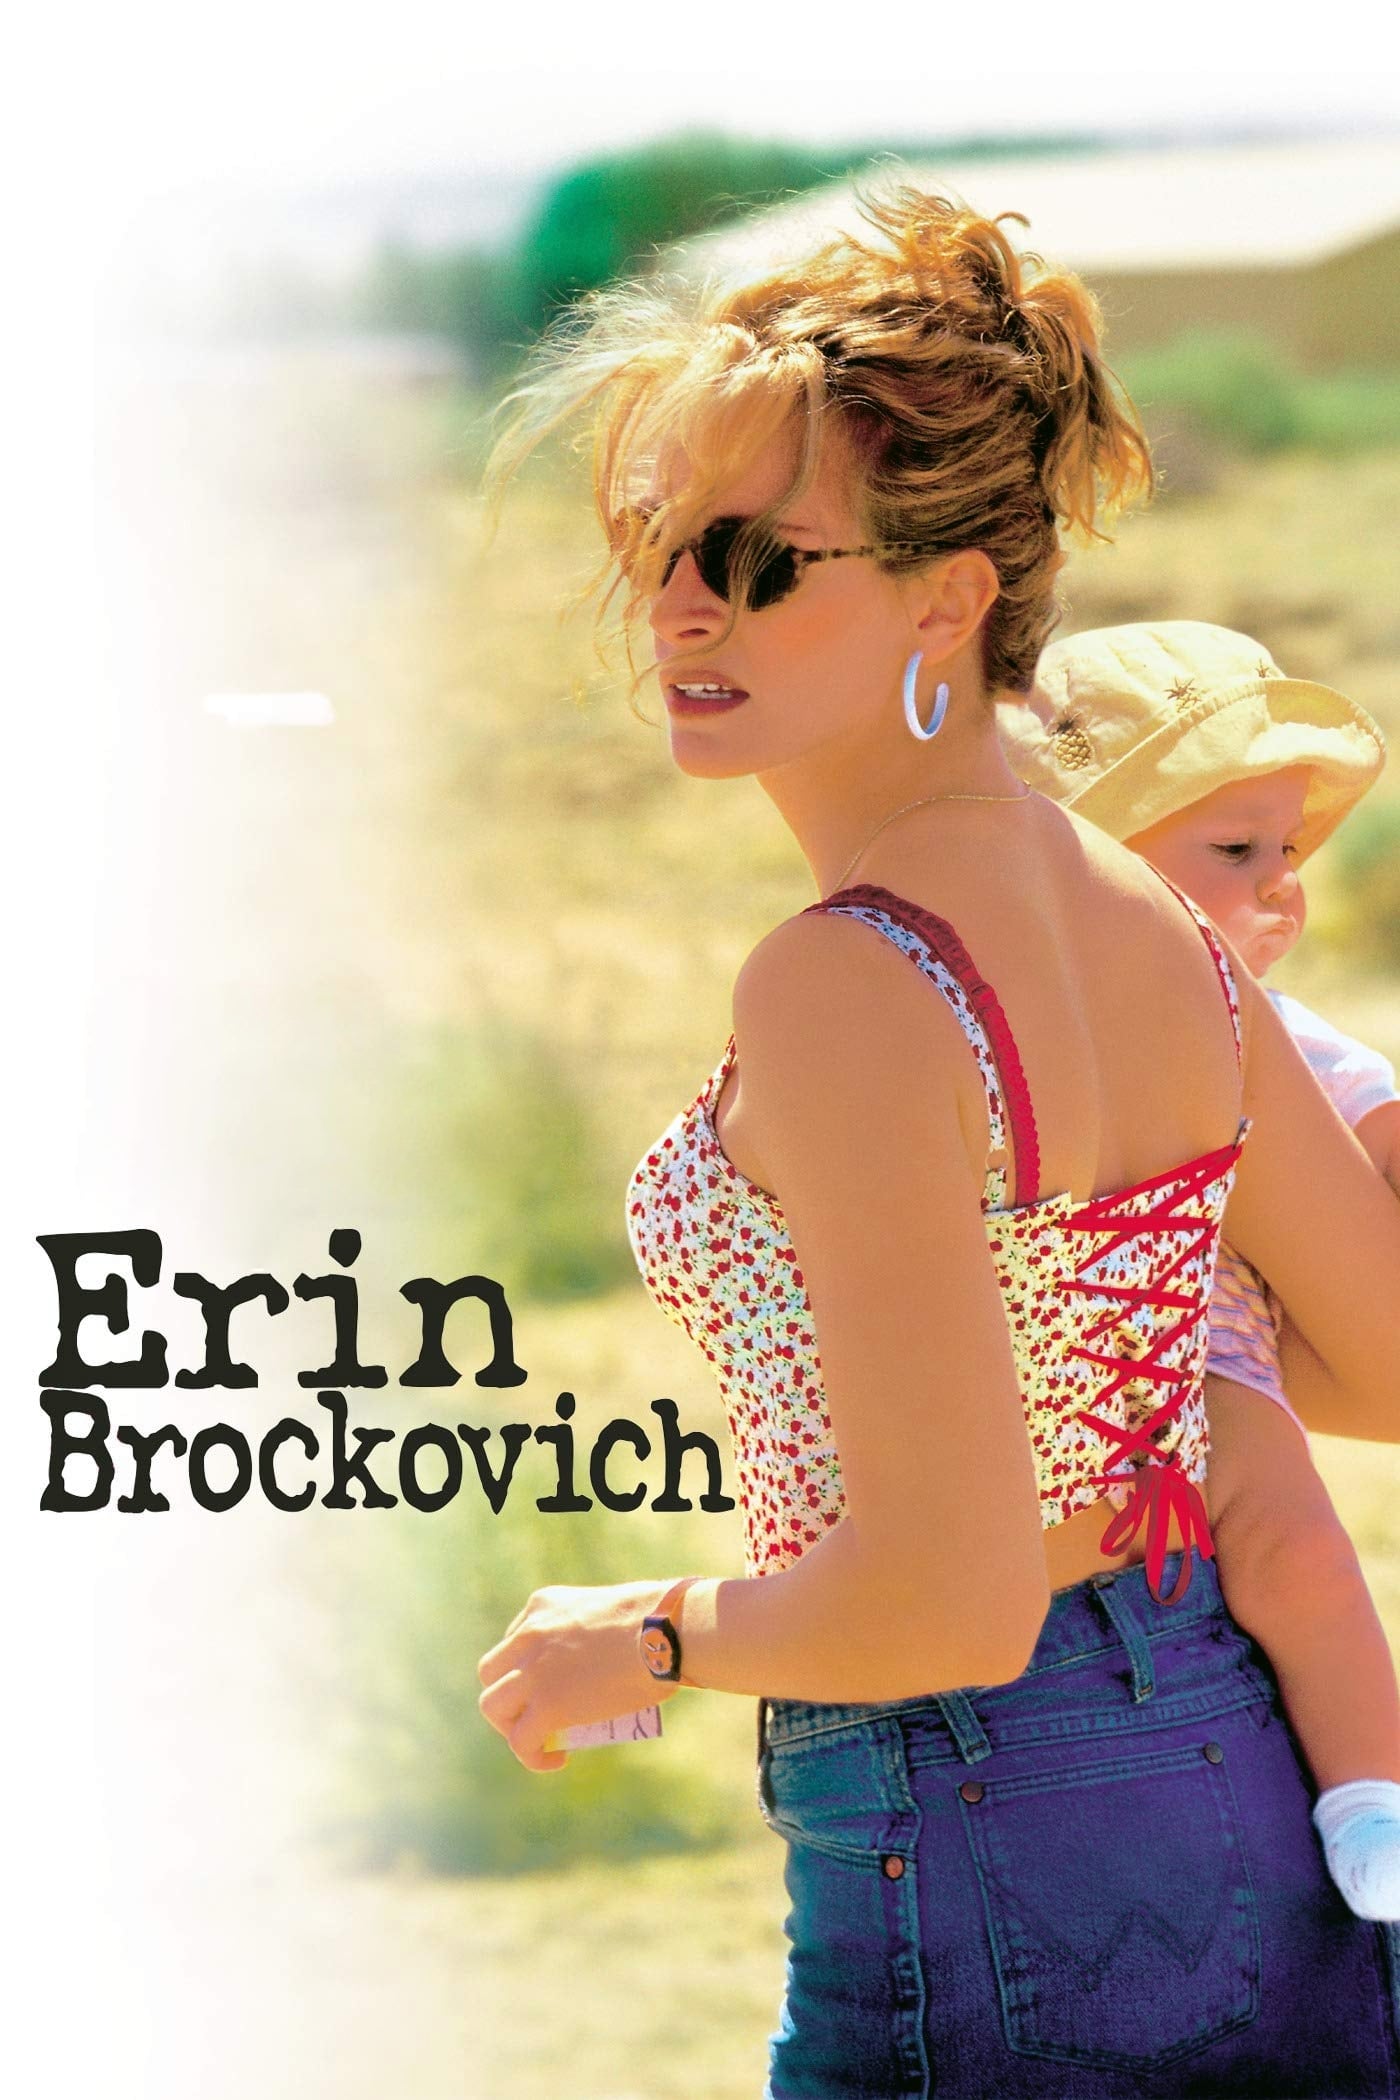 Erin Brockovich: Uma Mulher de Talento